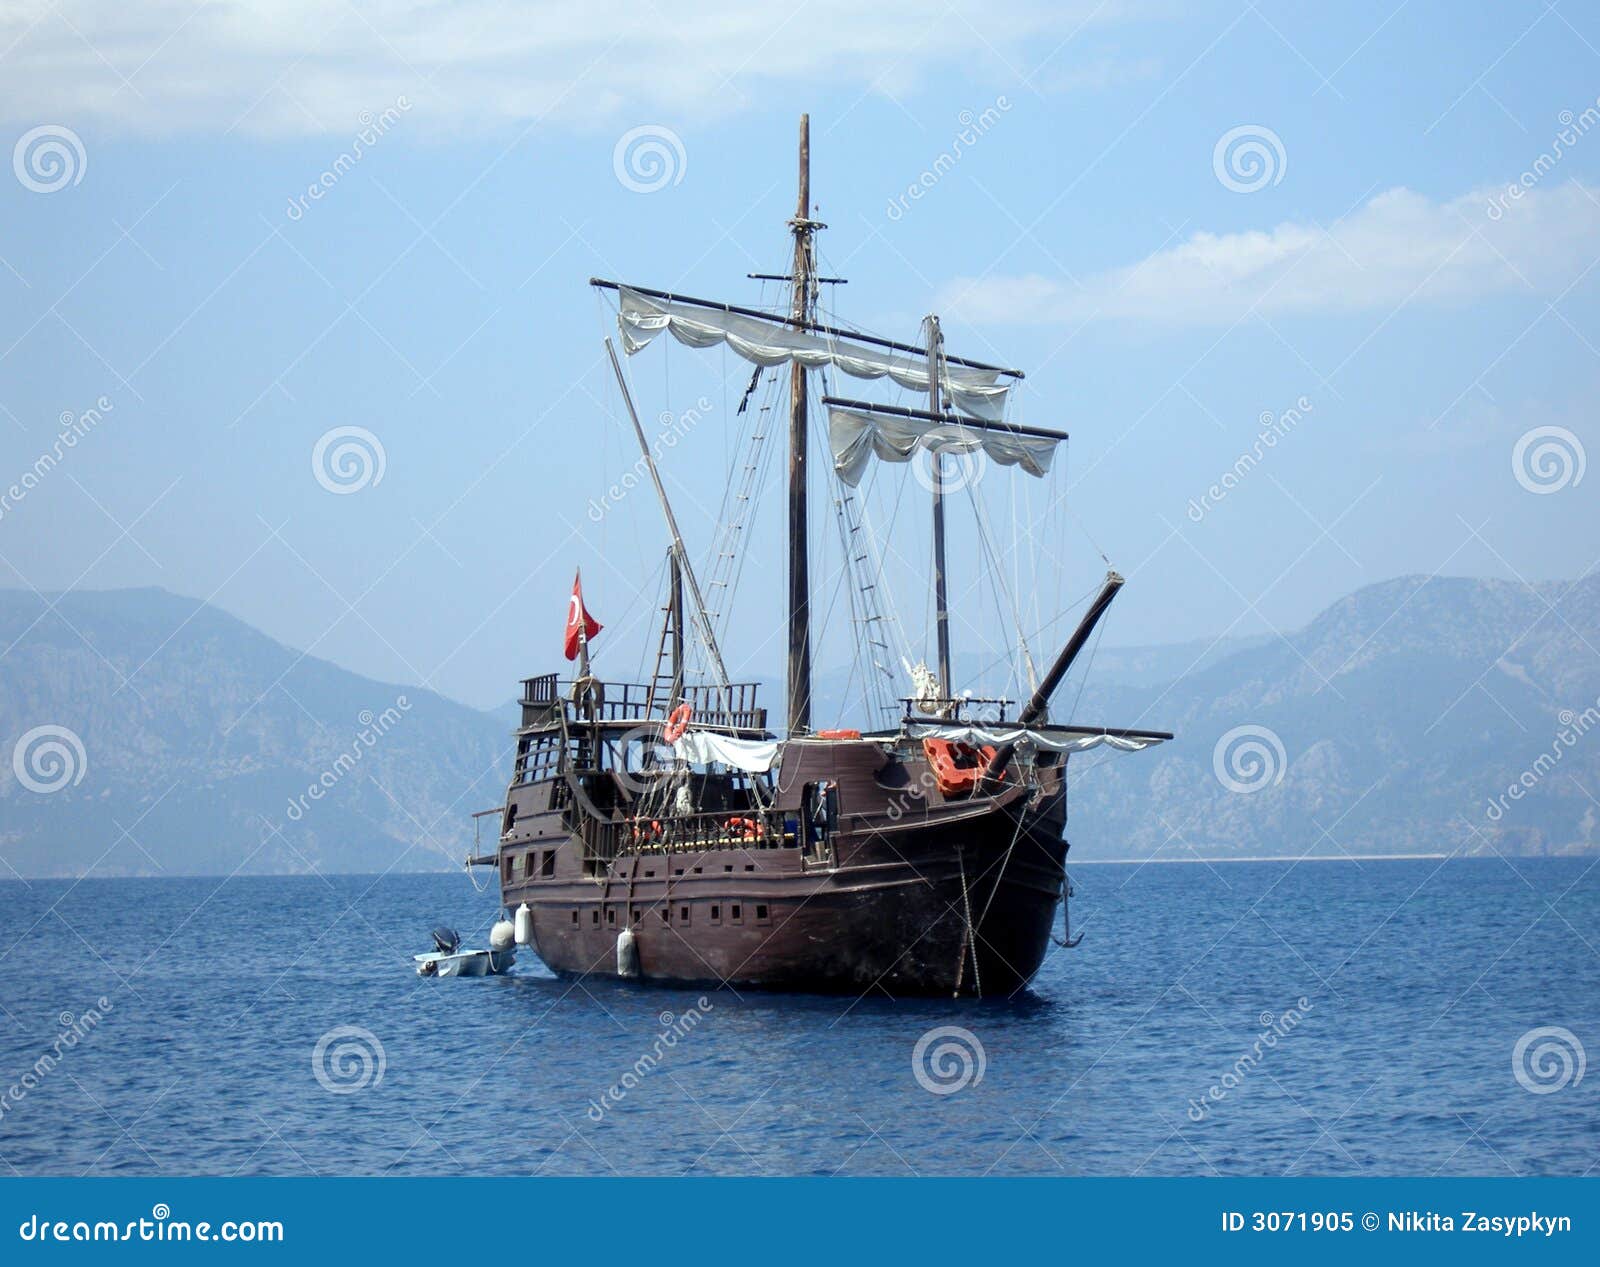 great pirat ship in sea (in tu